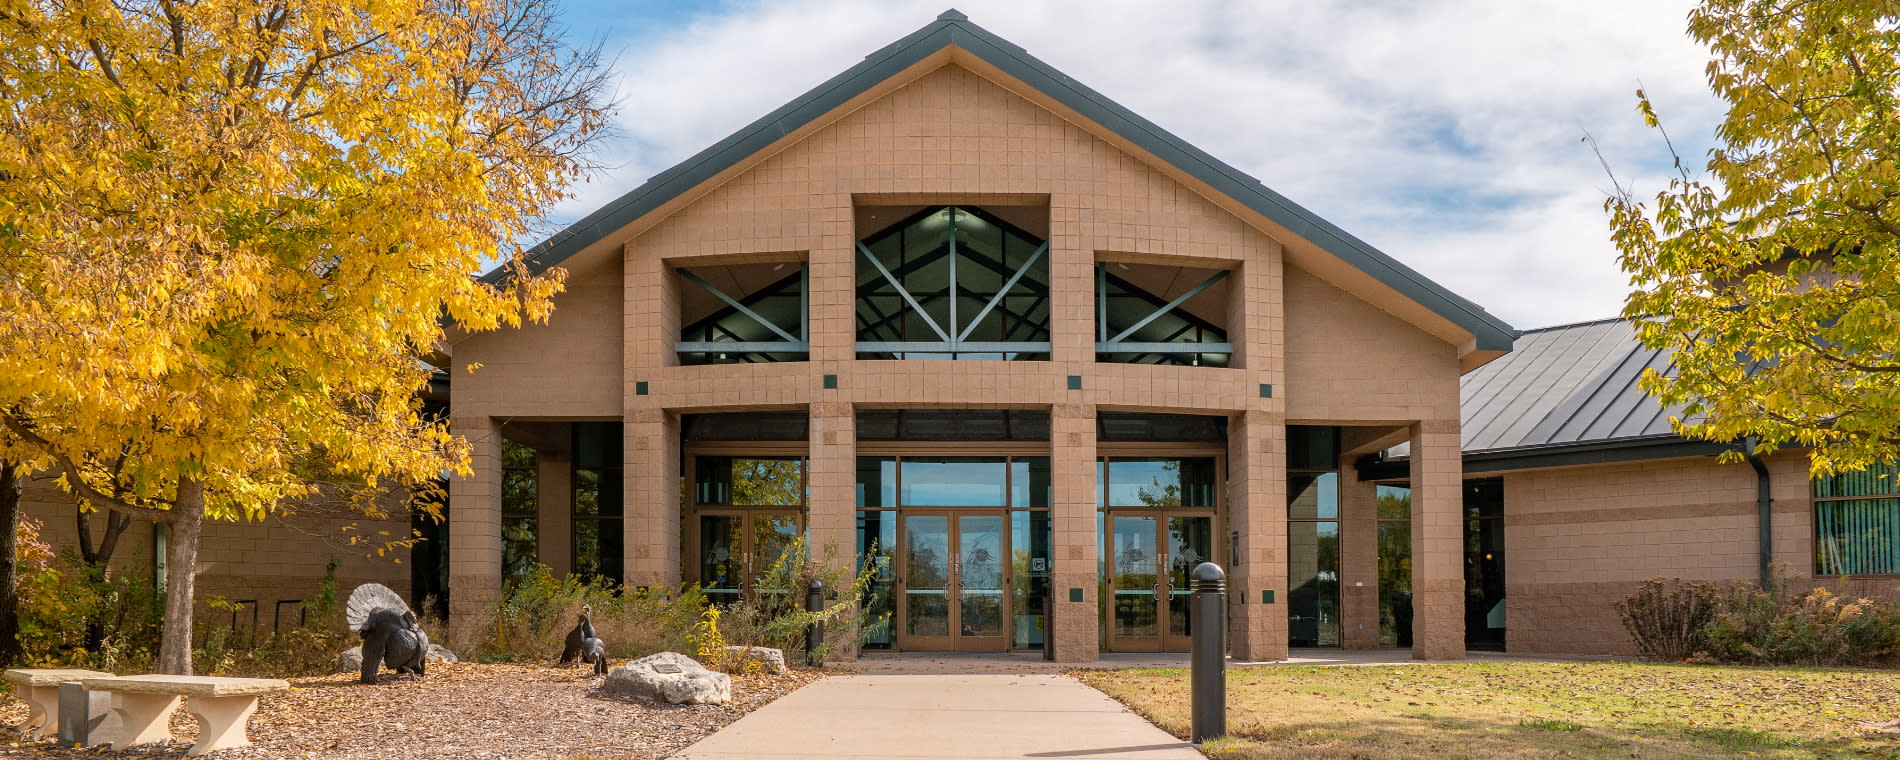 Great Plains Nature Center Entrance